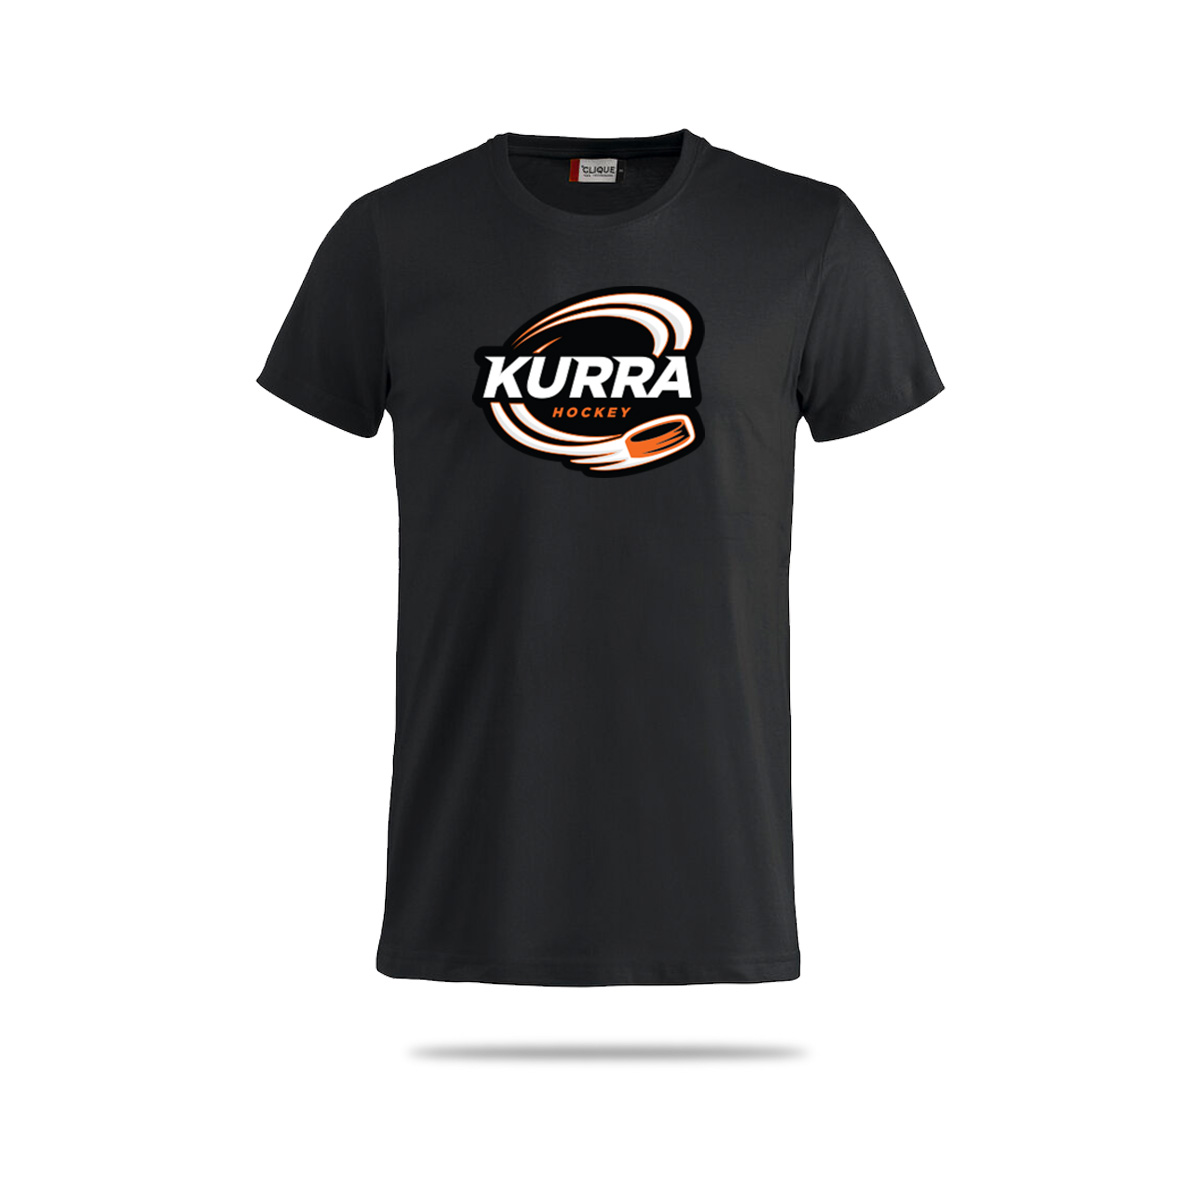 Kurra-fani-3020-musta-original